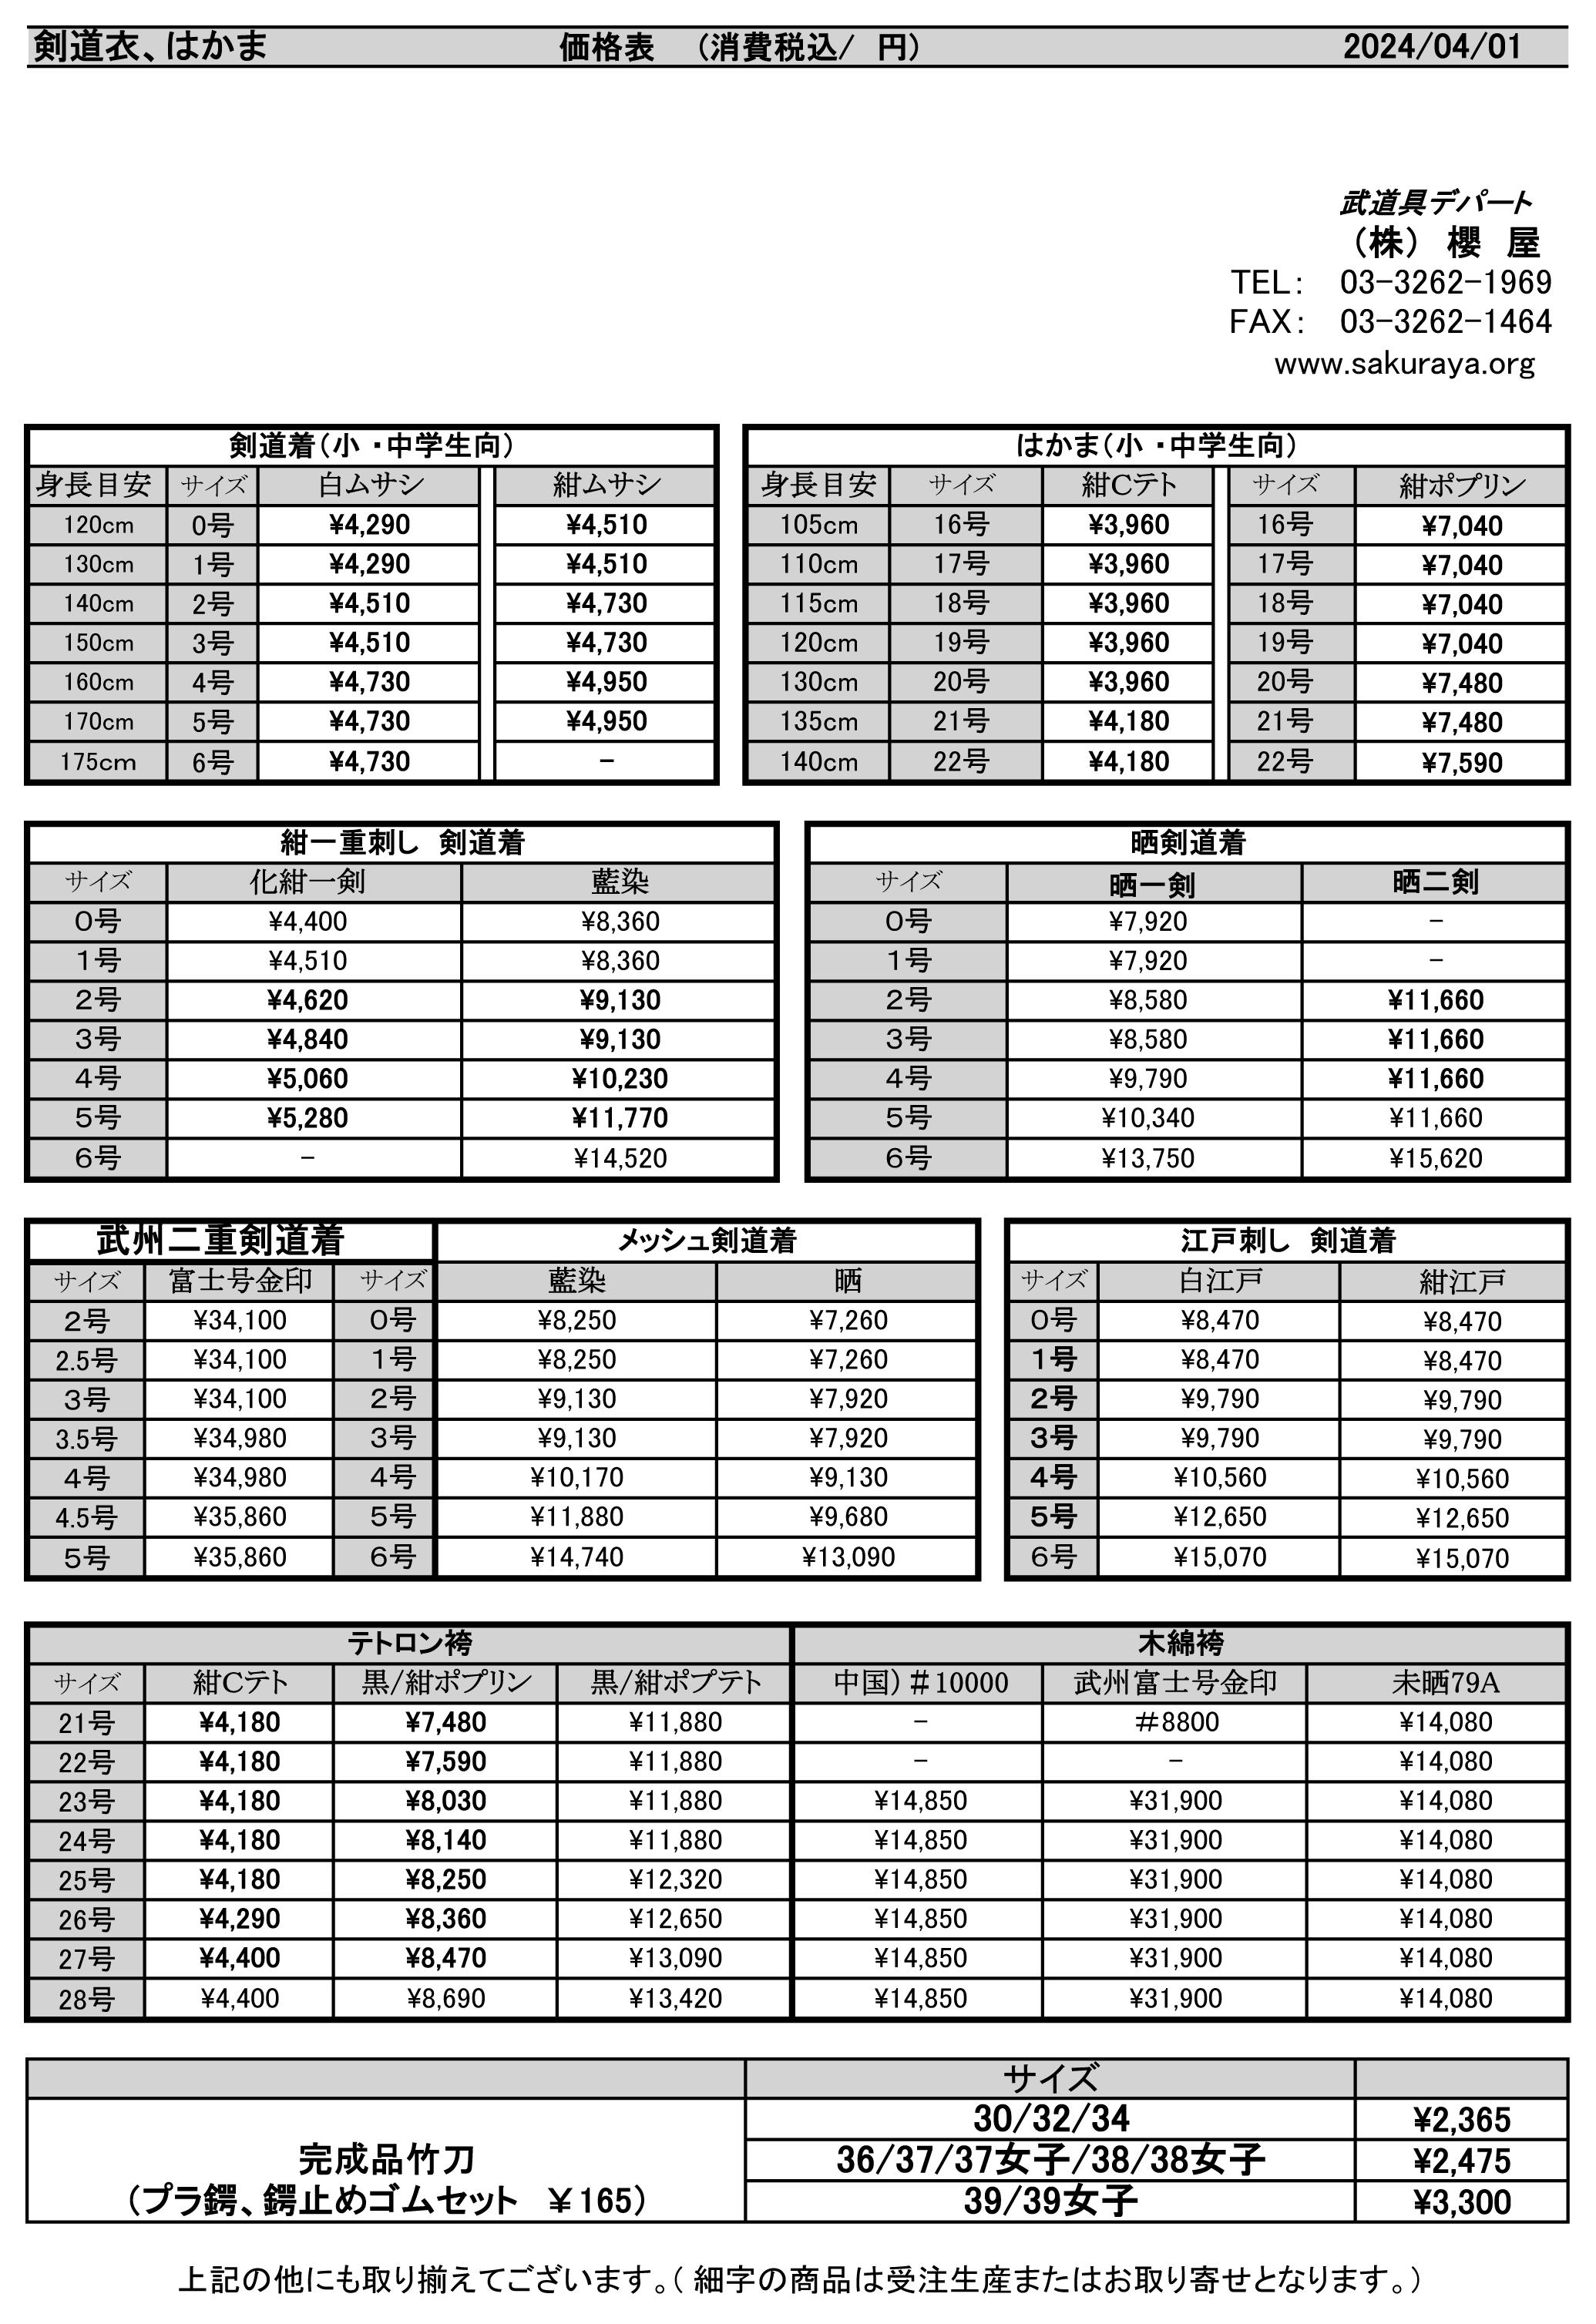 剣道価格表1